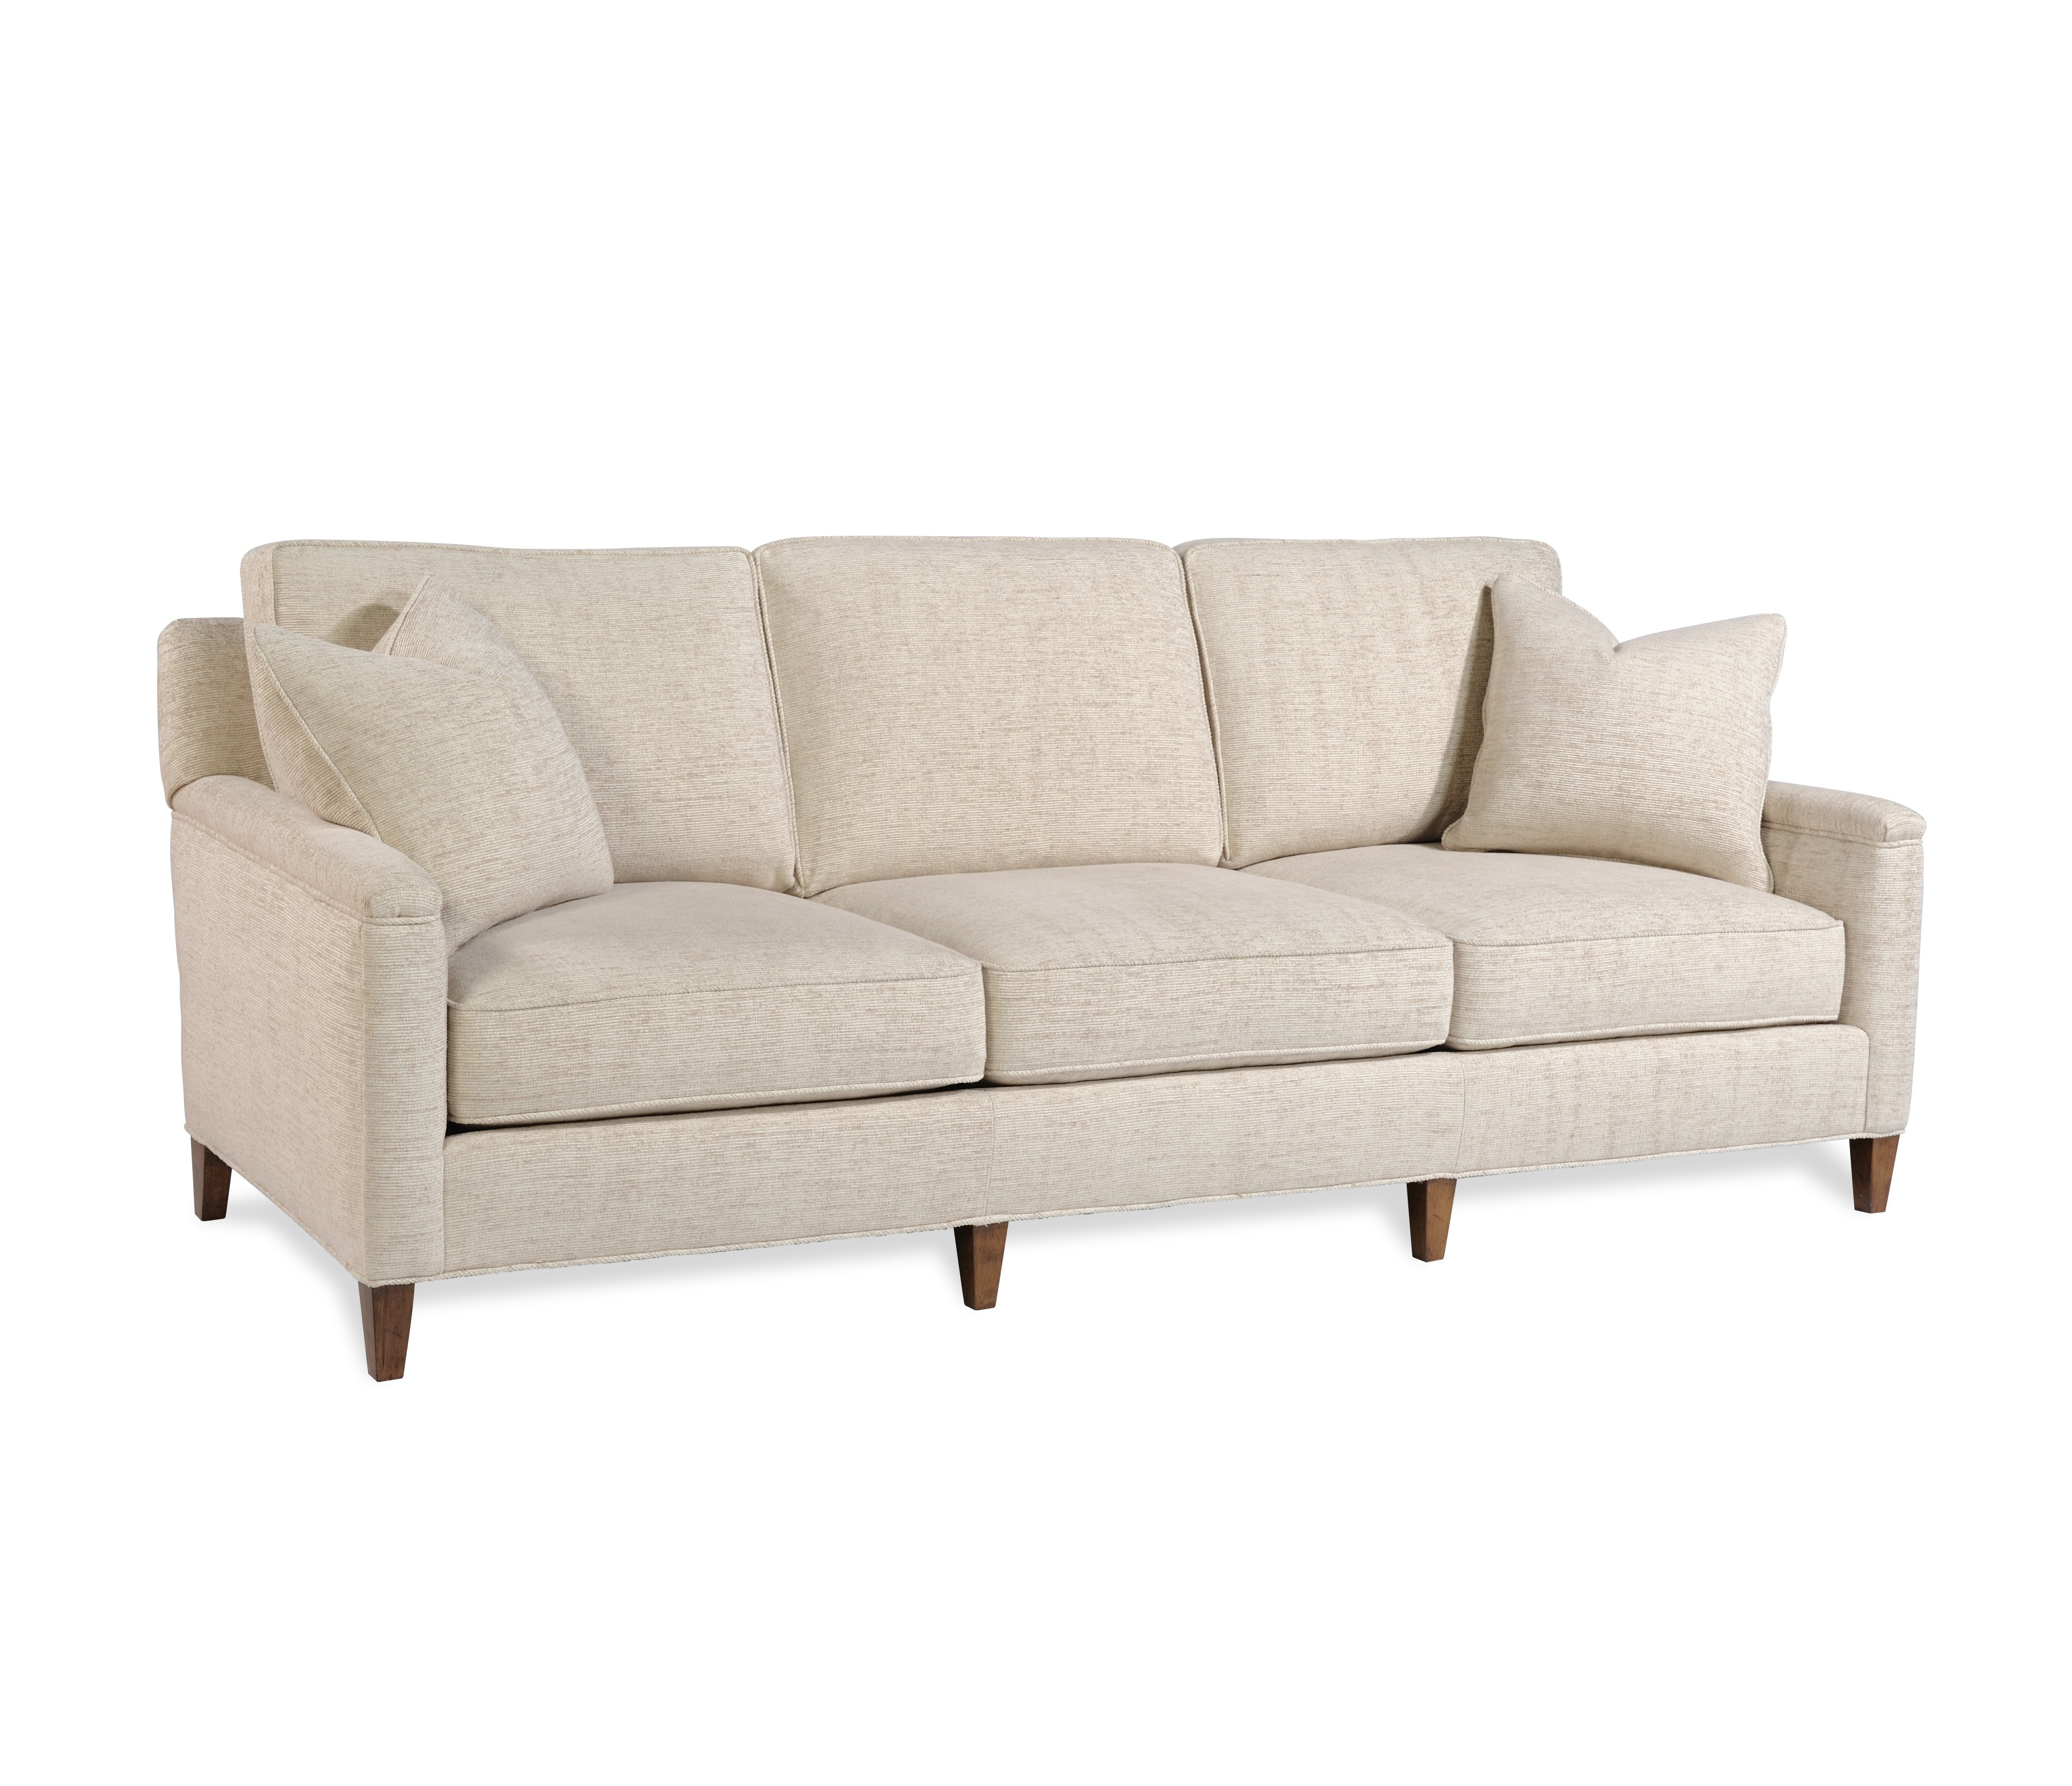 Living Room Sofas - Howard Lorton Furniture & Design - Denver, CO